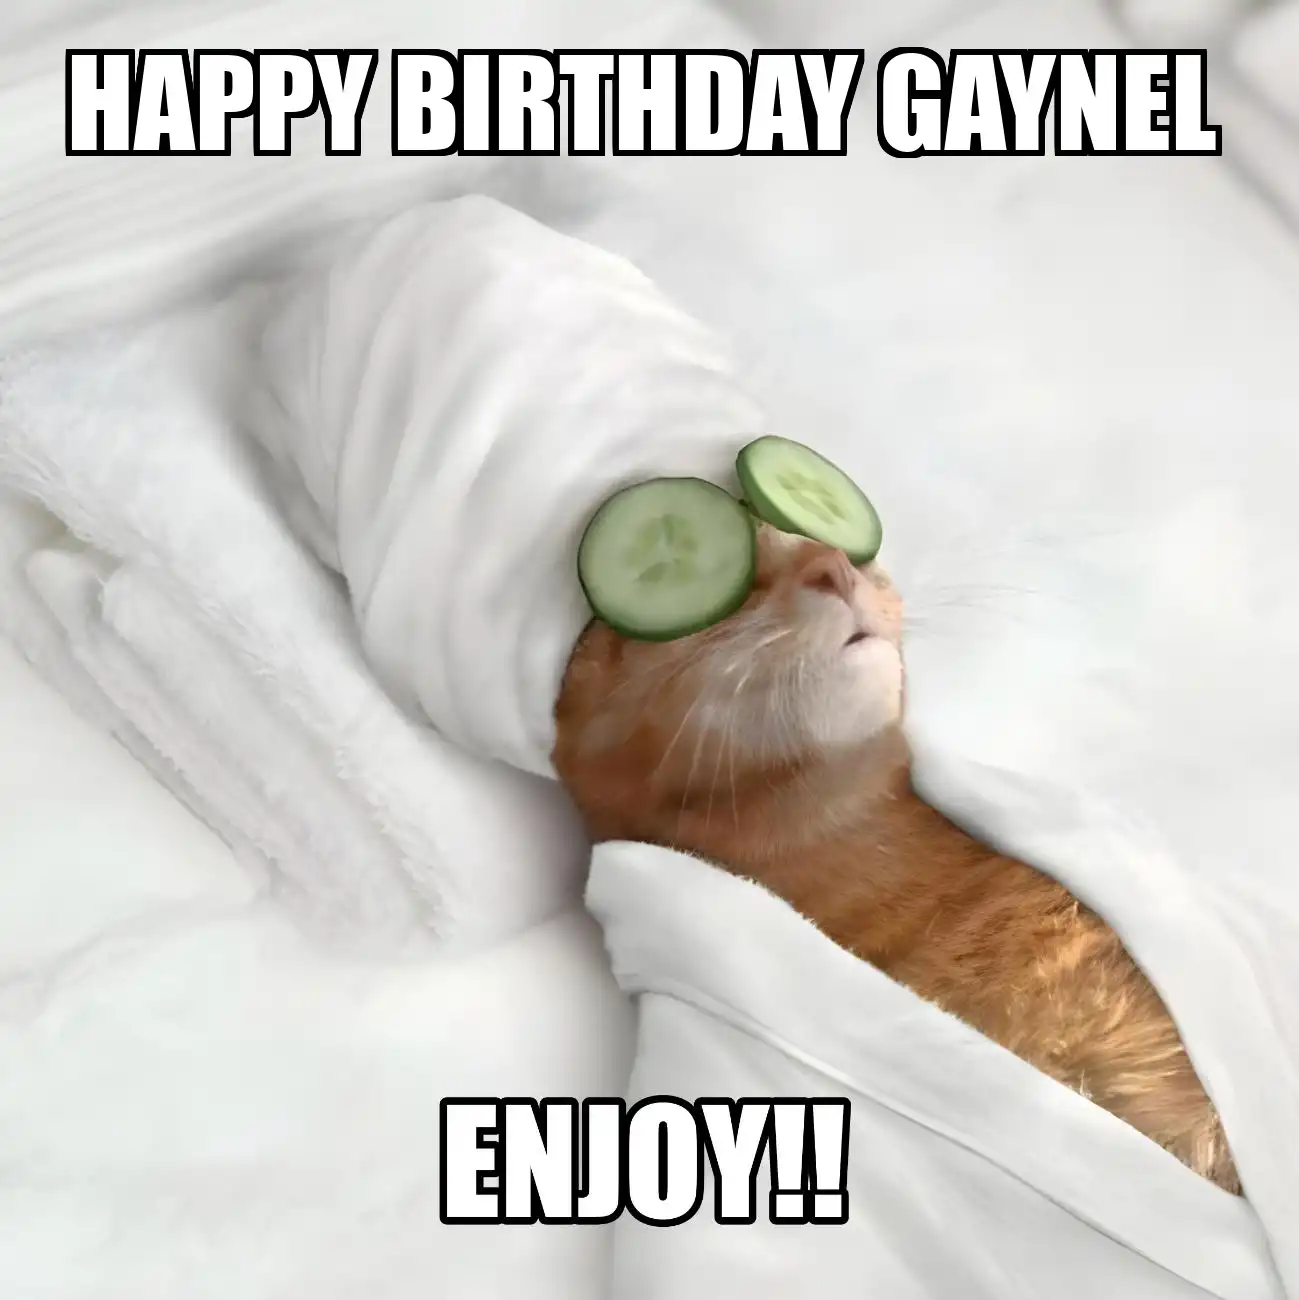 Happy Birthday Gaynel Enjoy Cat Meme